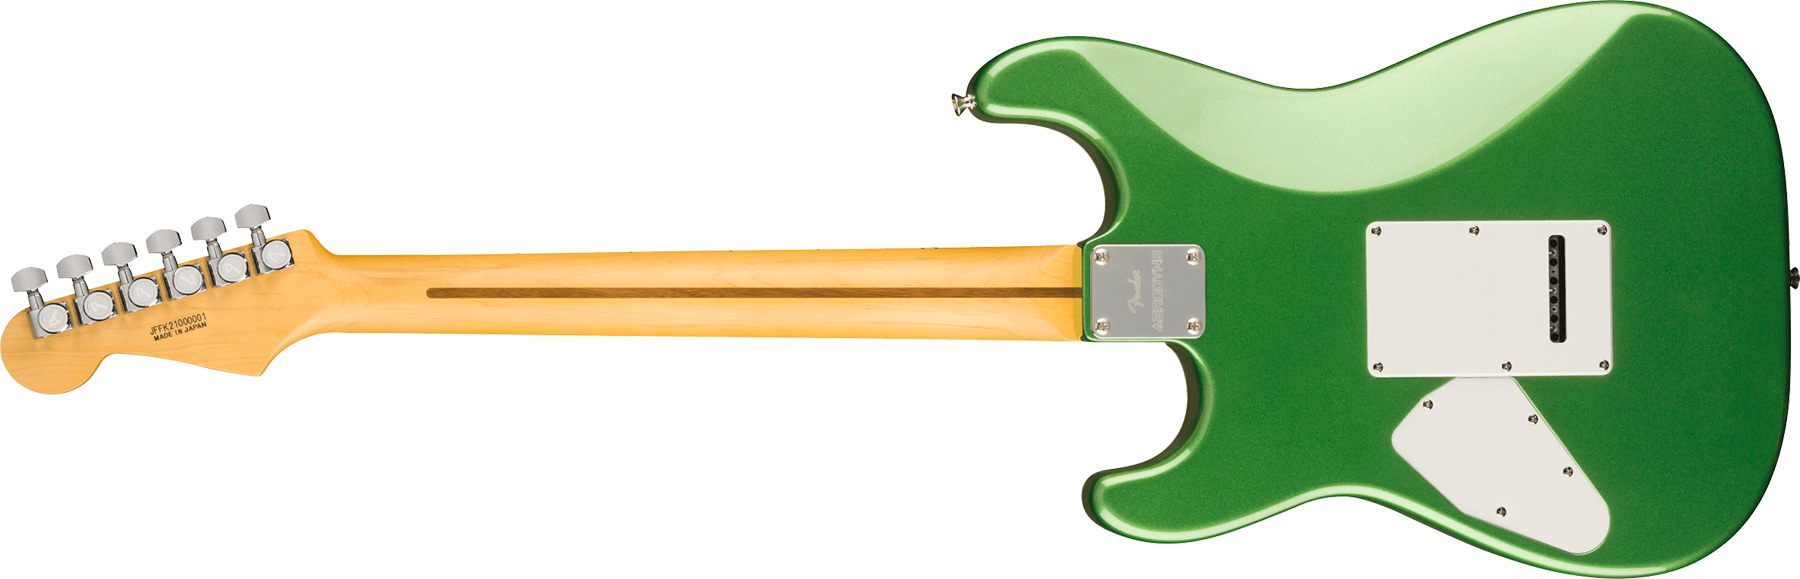 Fender Strat Aerodyne Special Jap Trem Hss Mn - Speed Green Metallic - Guitare Électrique Forme Str - Variation 1